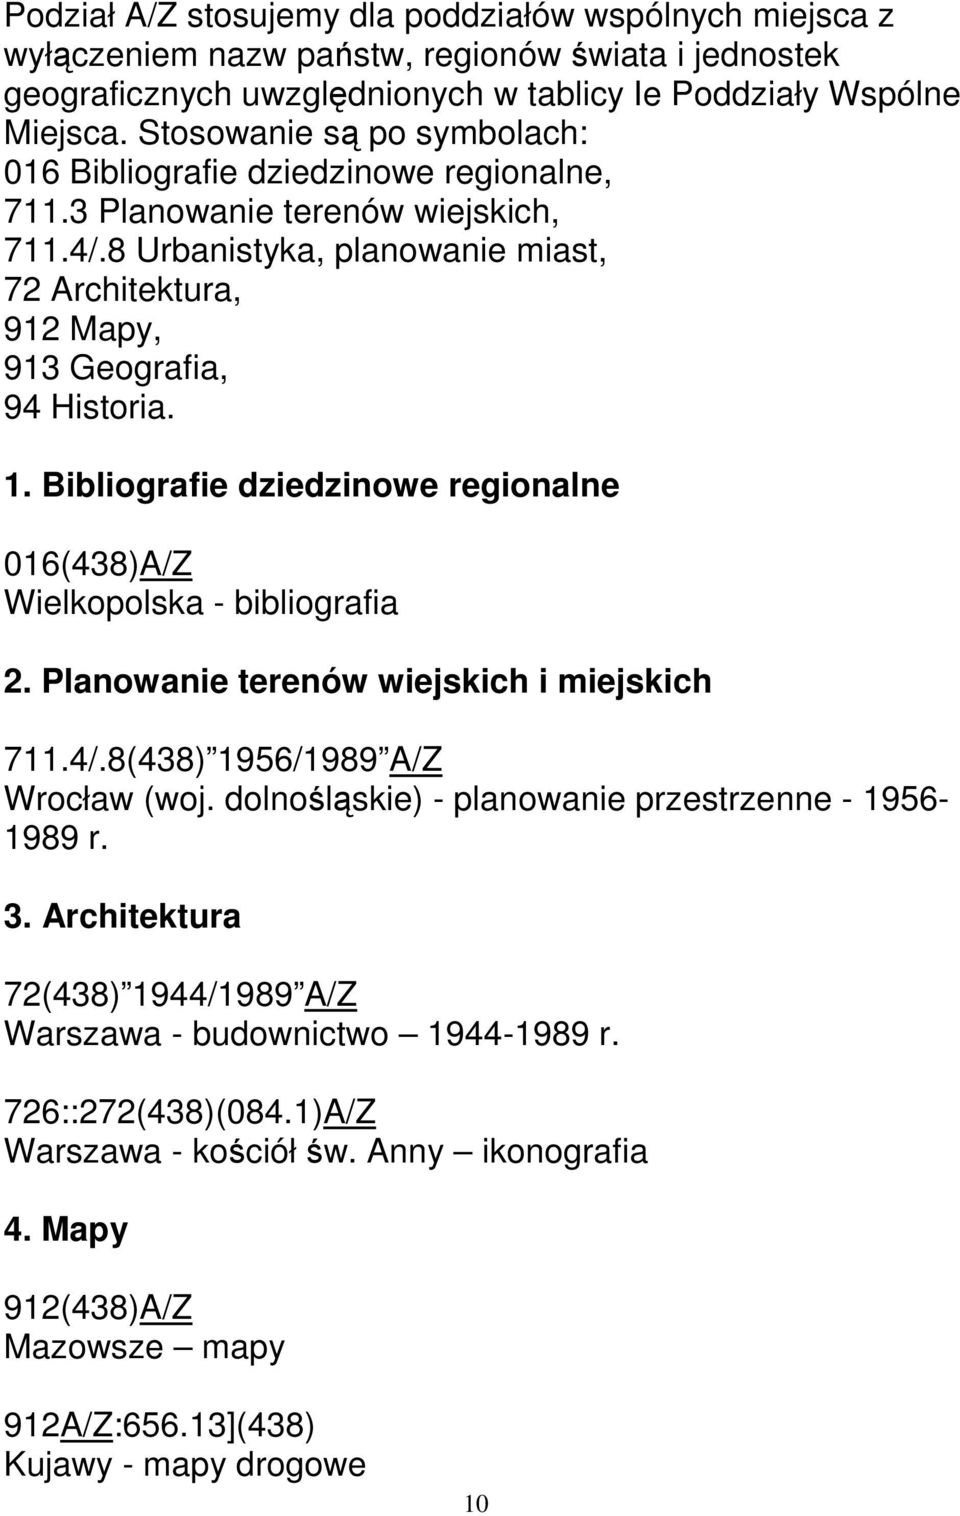 1. Bibliografie dziedzinowe regionalne 016(438)A/Z Wielkopolska - bibliografia 2. Planowanie terenów wiejskich i miejskich 711.4/.8(438) 1956/1989 A/Z Wrocław (woj.